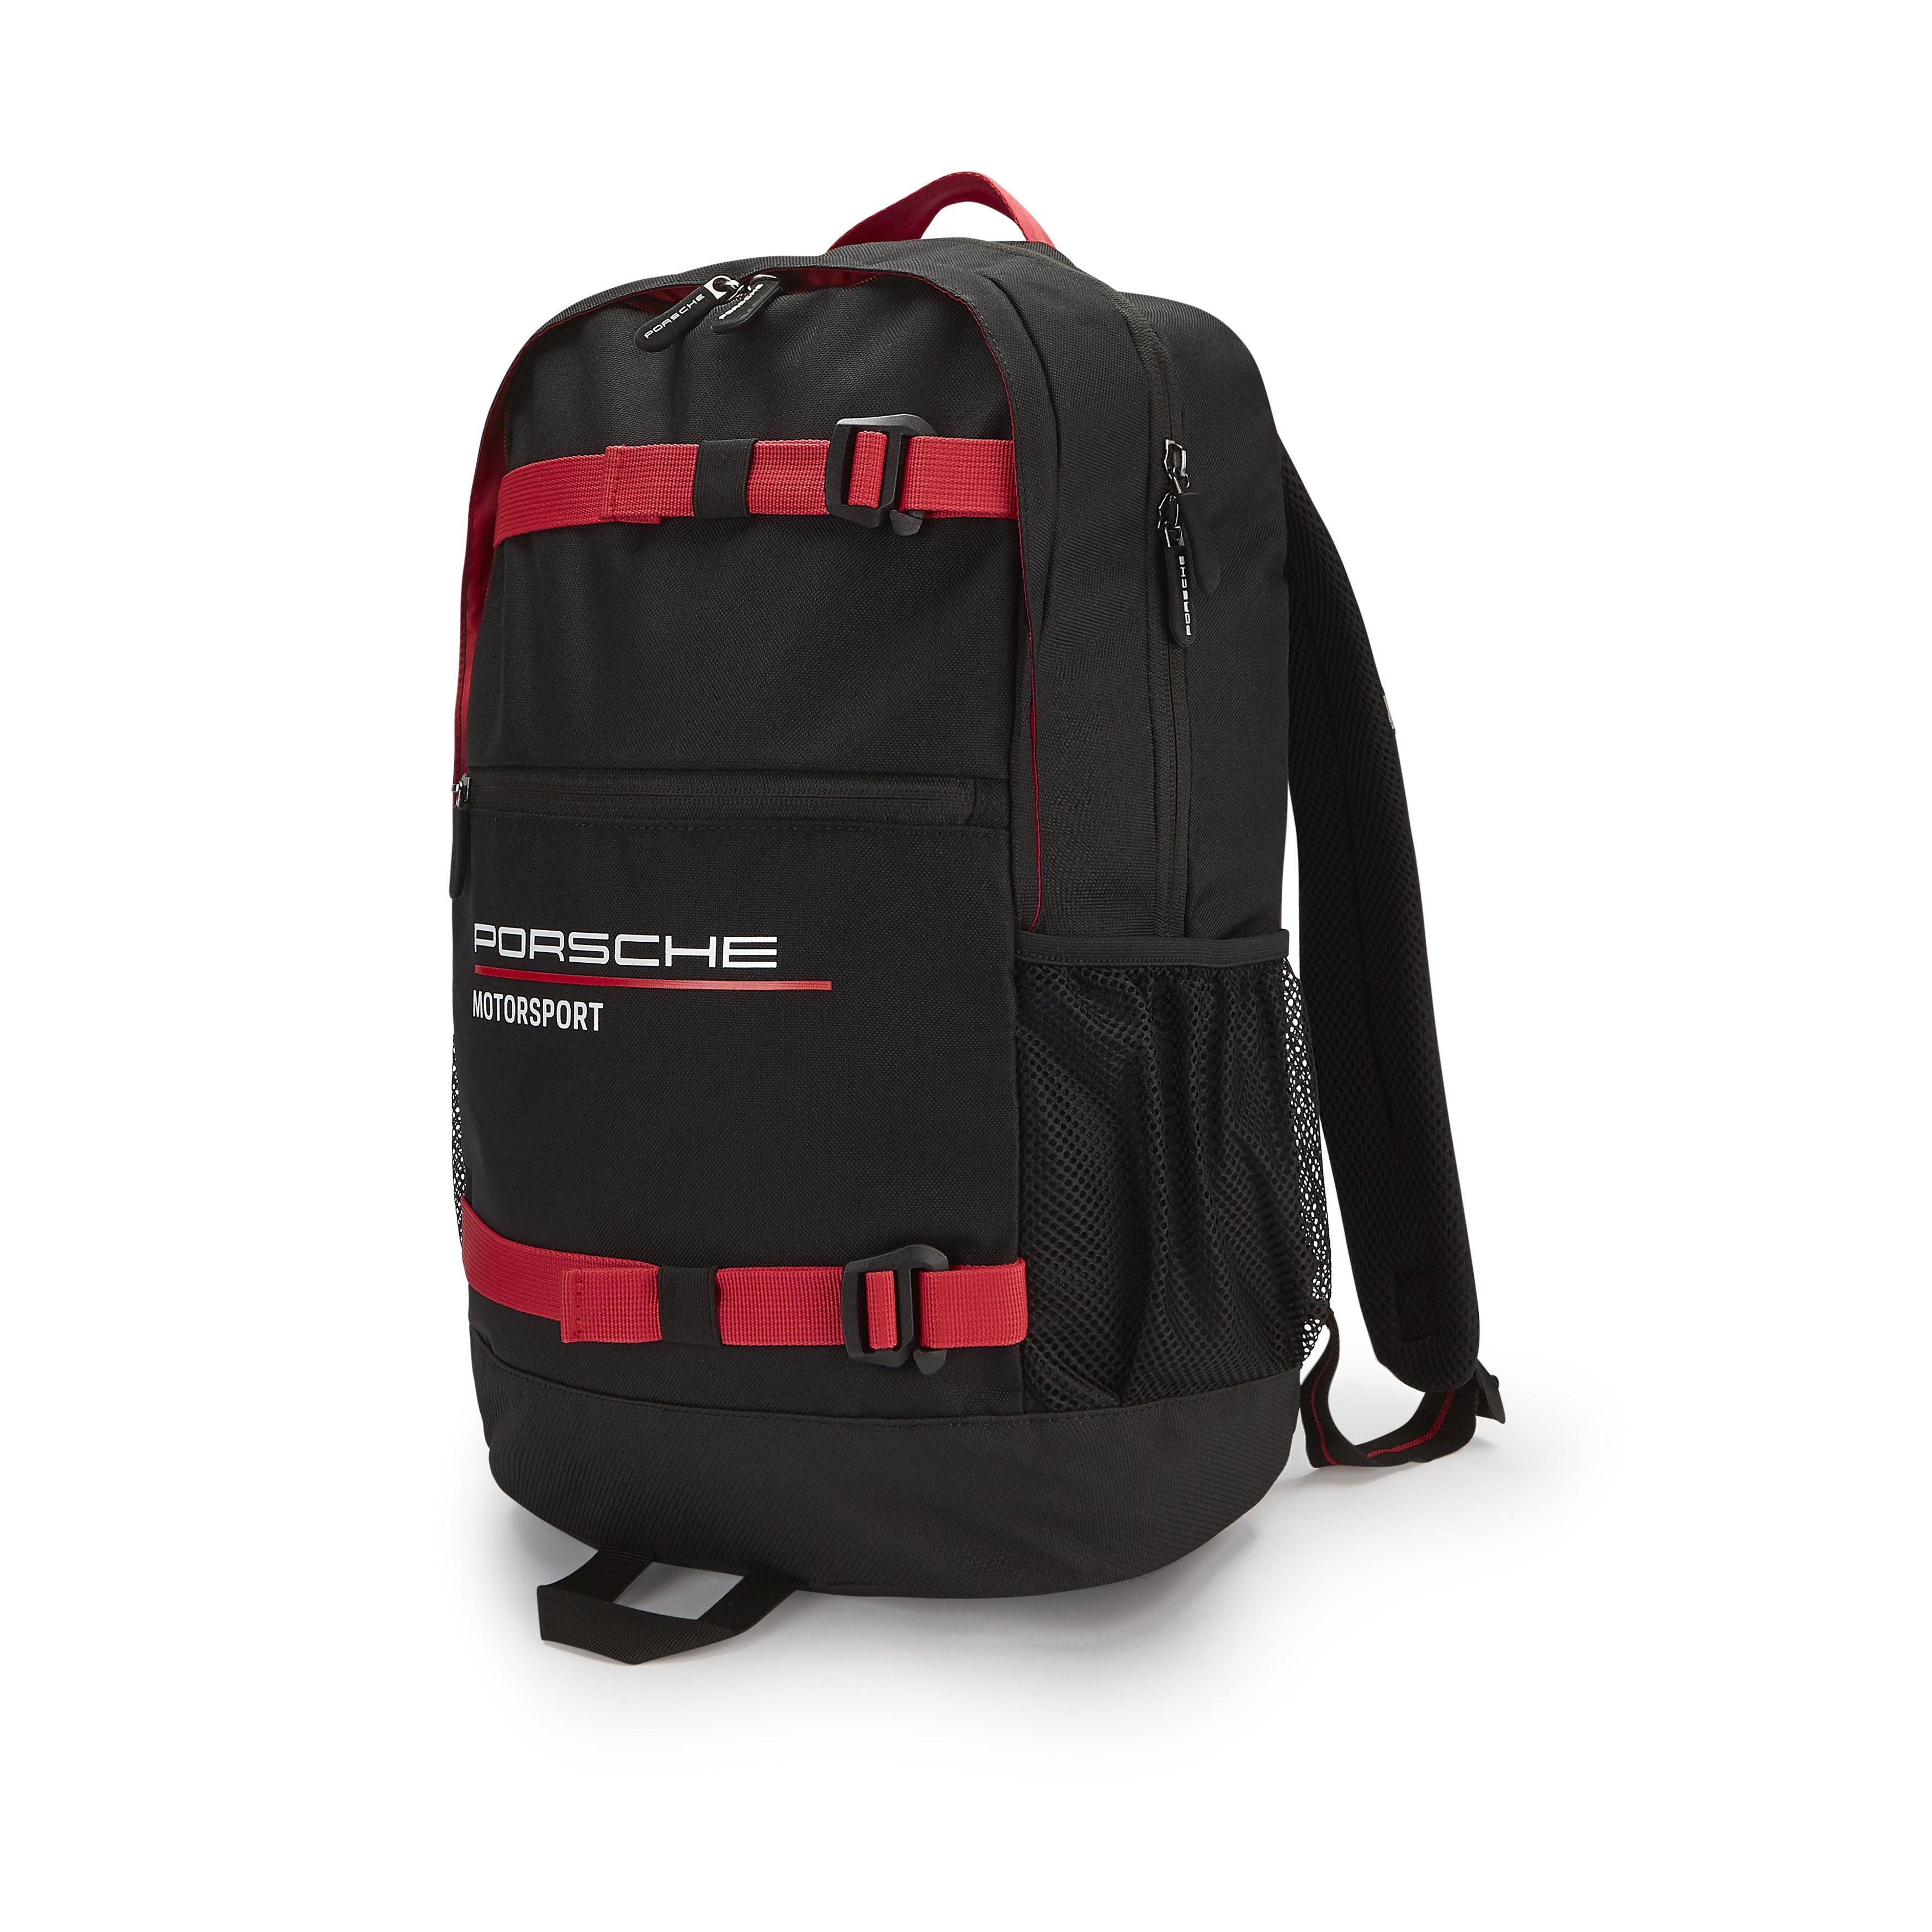 Porsche Motorsport Backpack Black/Red